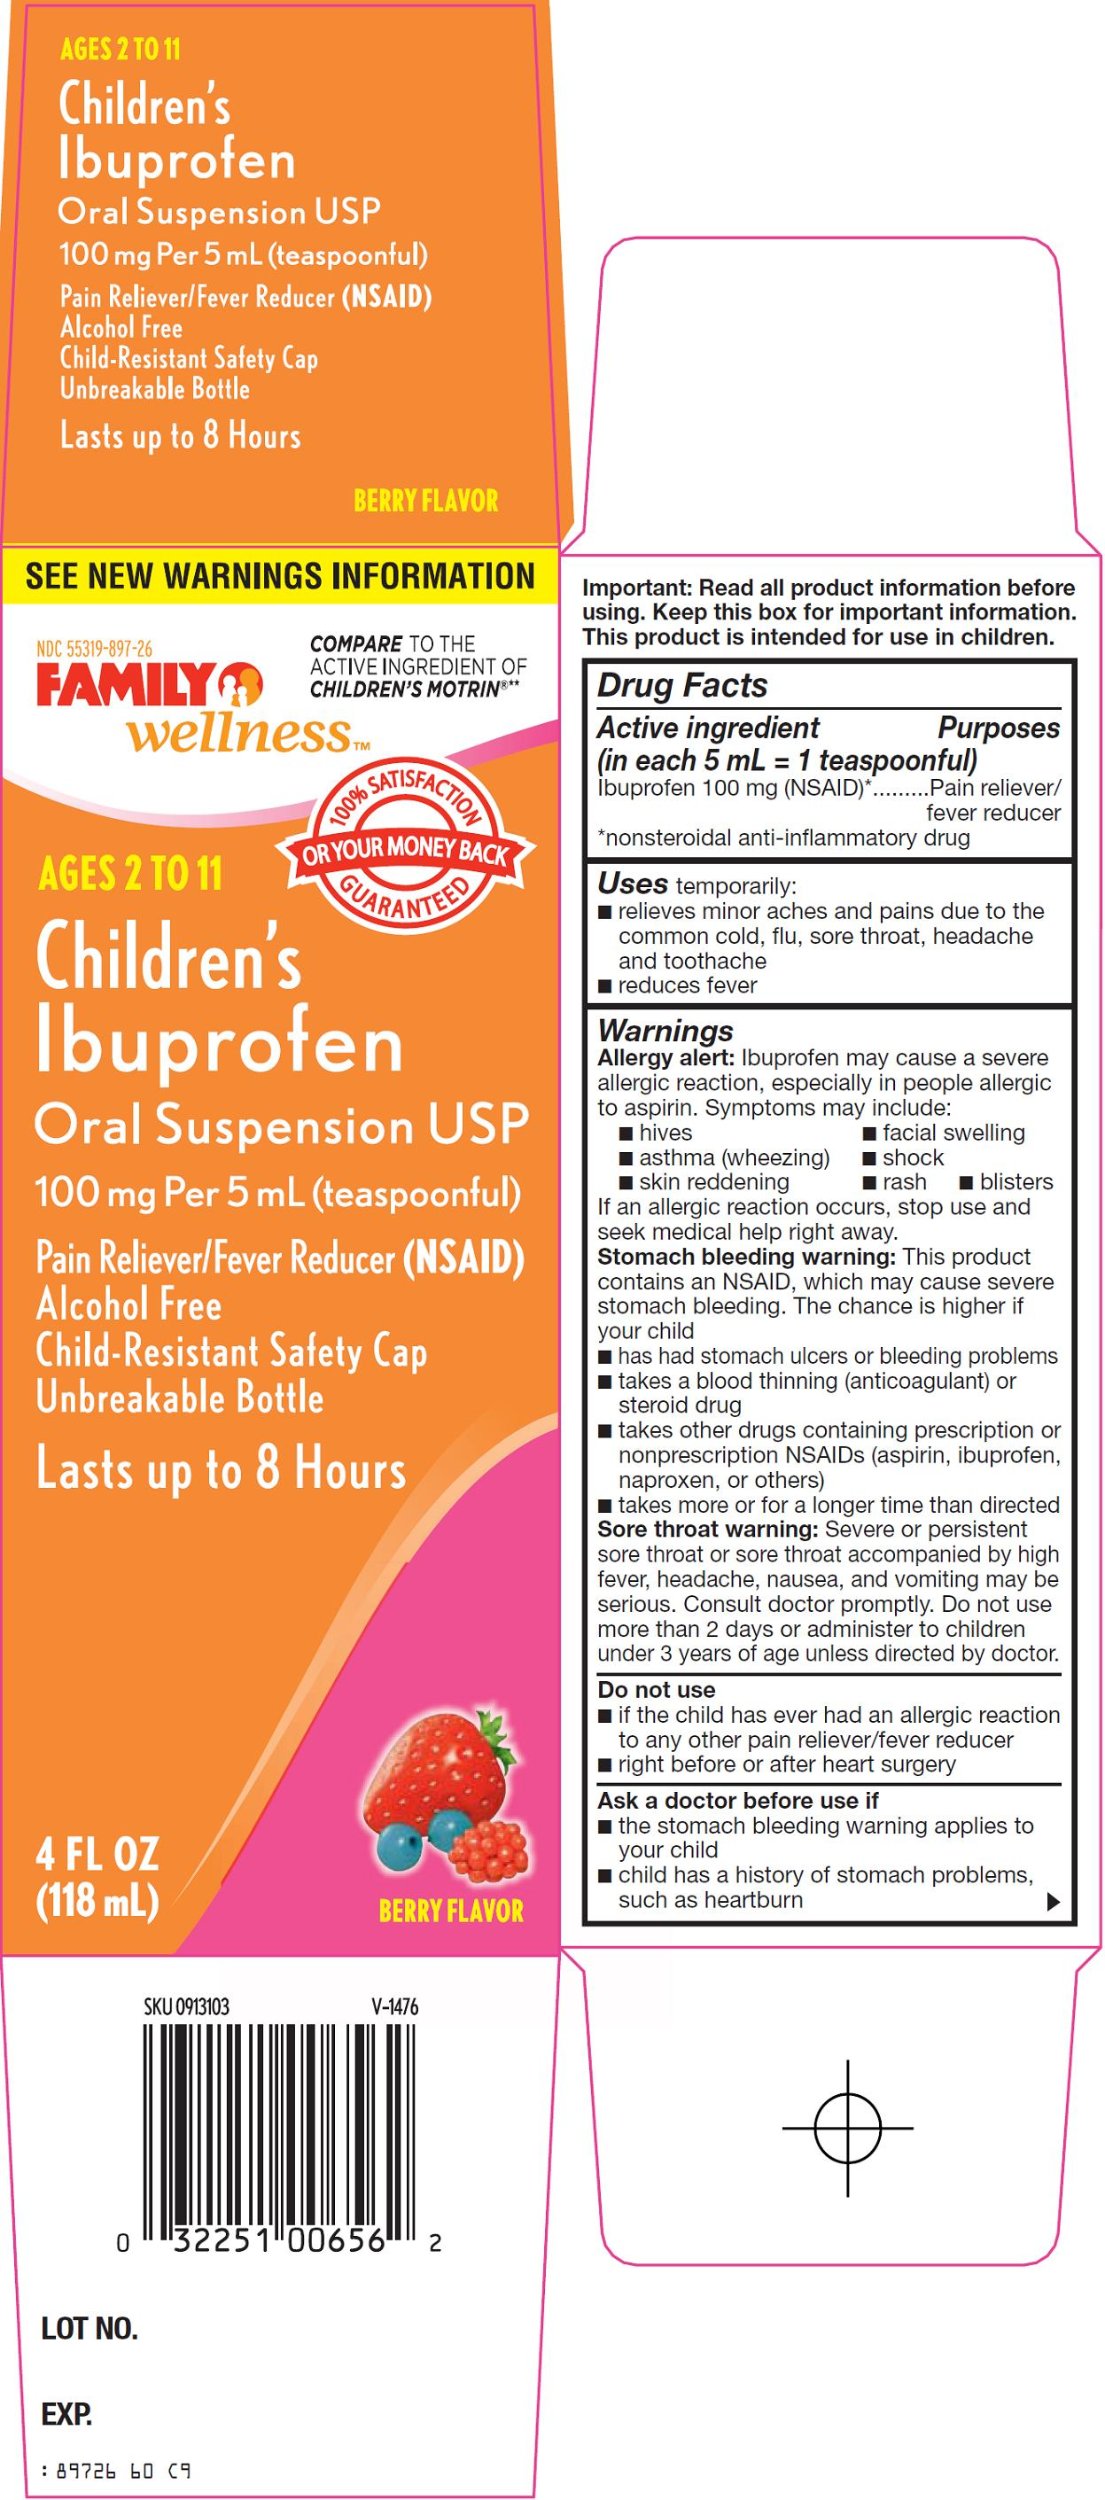 Children's Ibuprofen Oral Suspension Carton Image 1